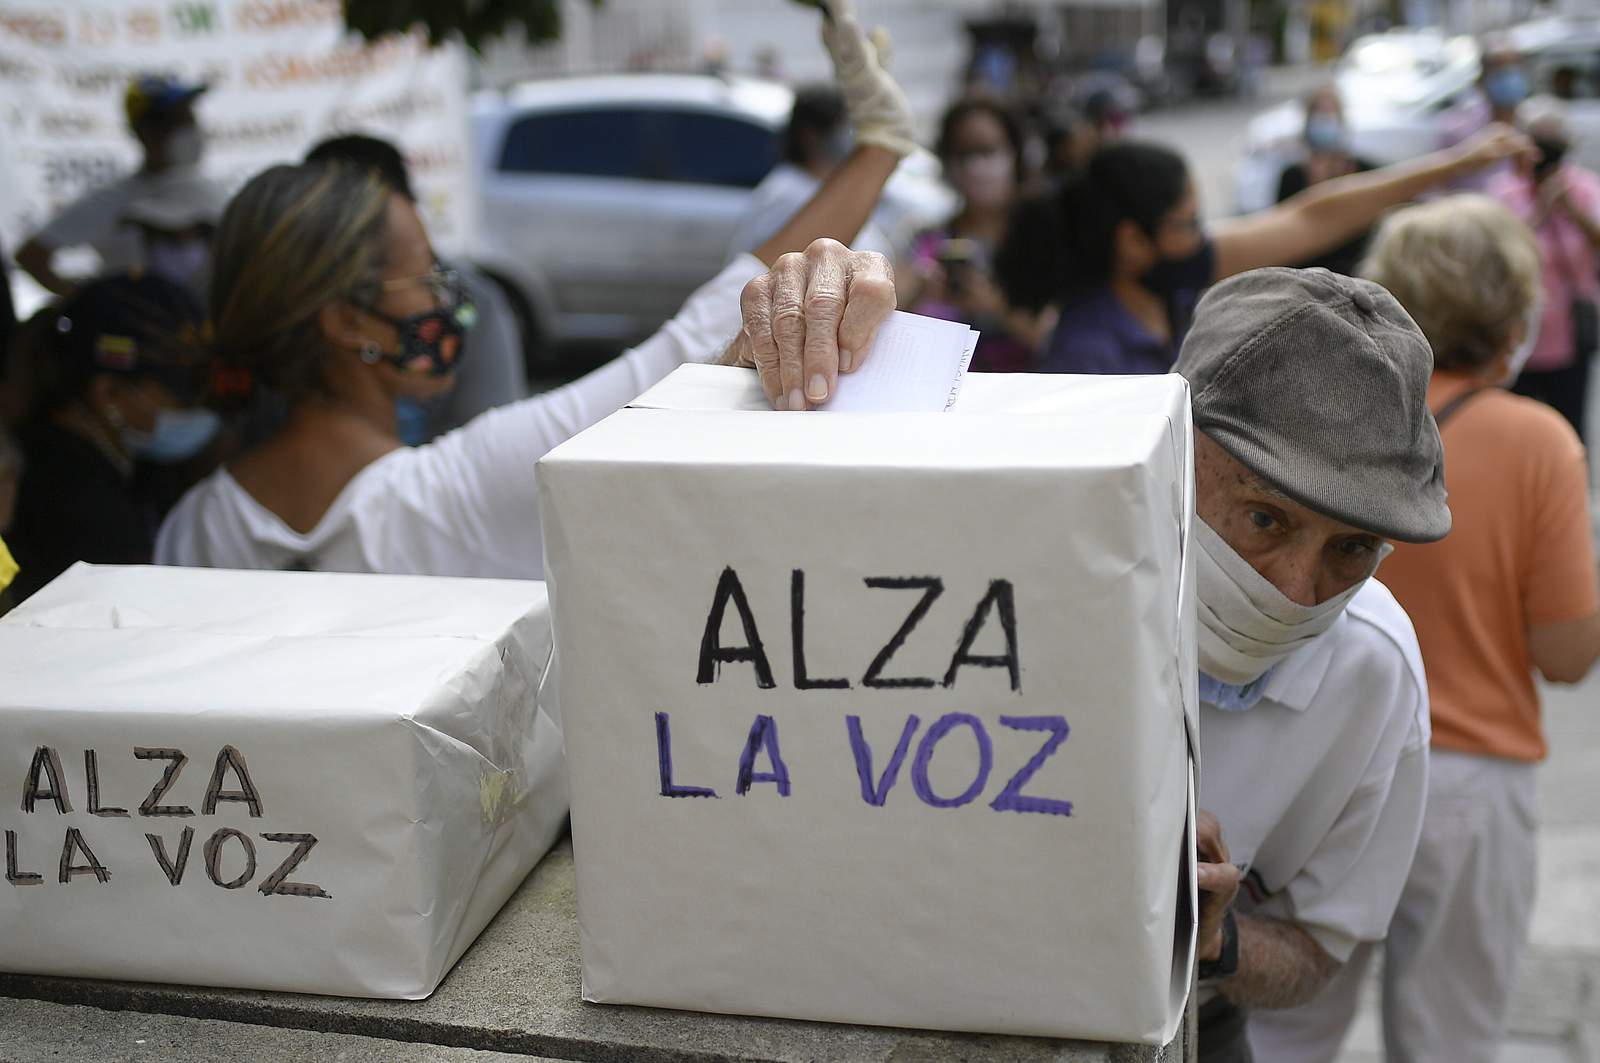 Maduro opponents claim big turnout in Venezuelan protest